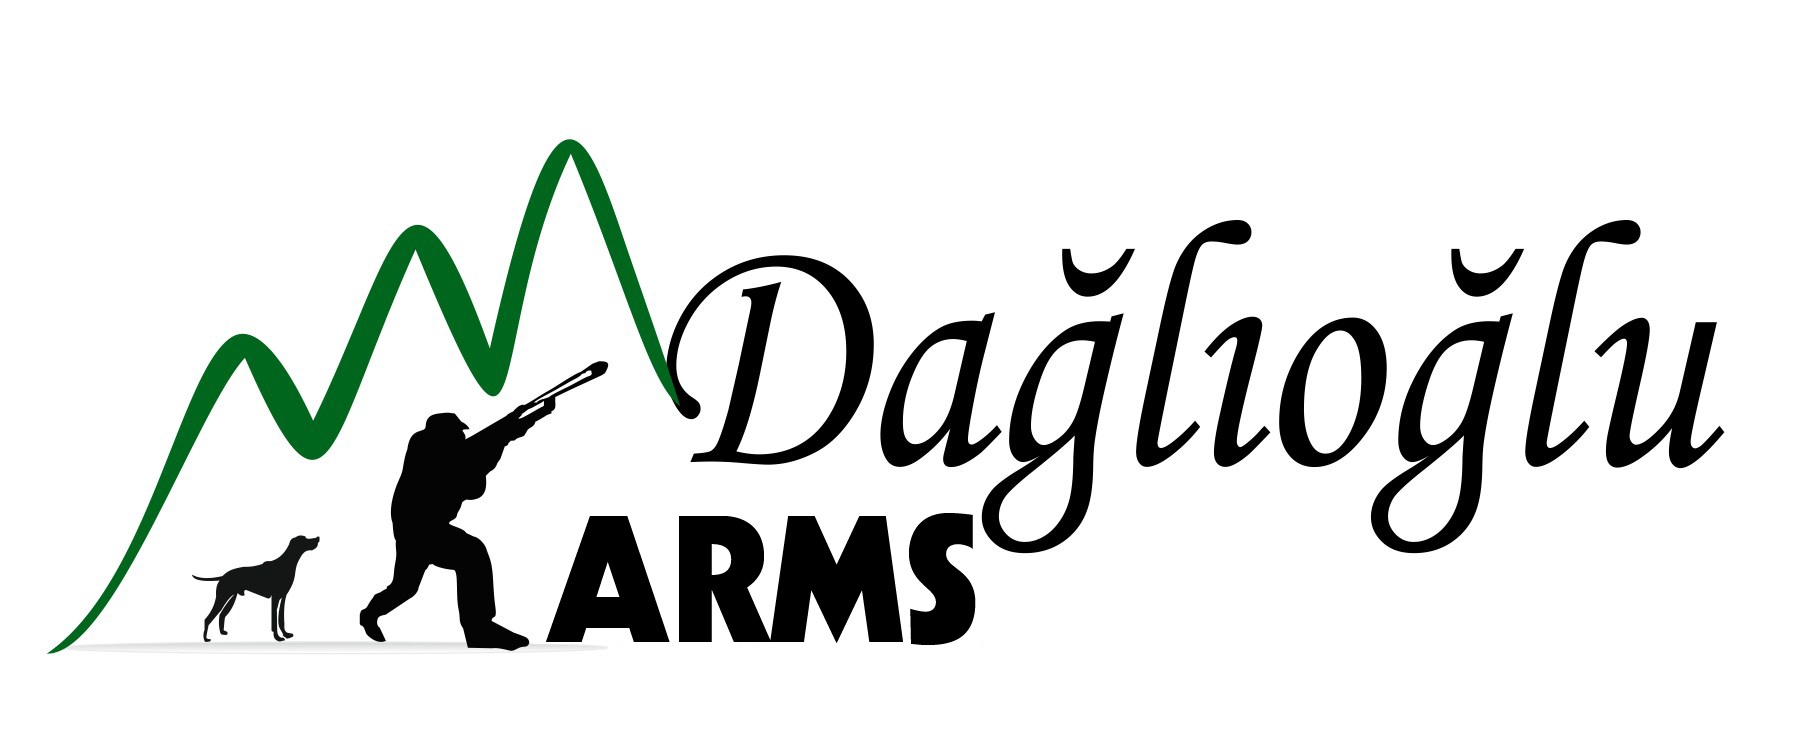 DAGLIOGLU Arms